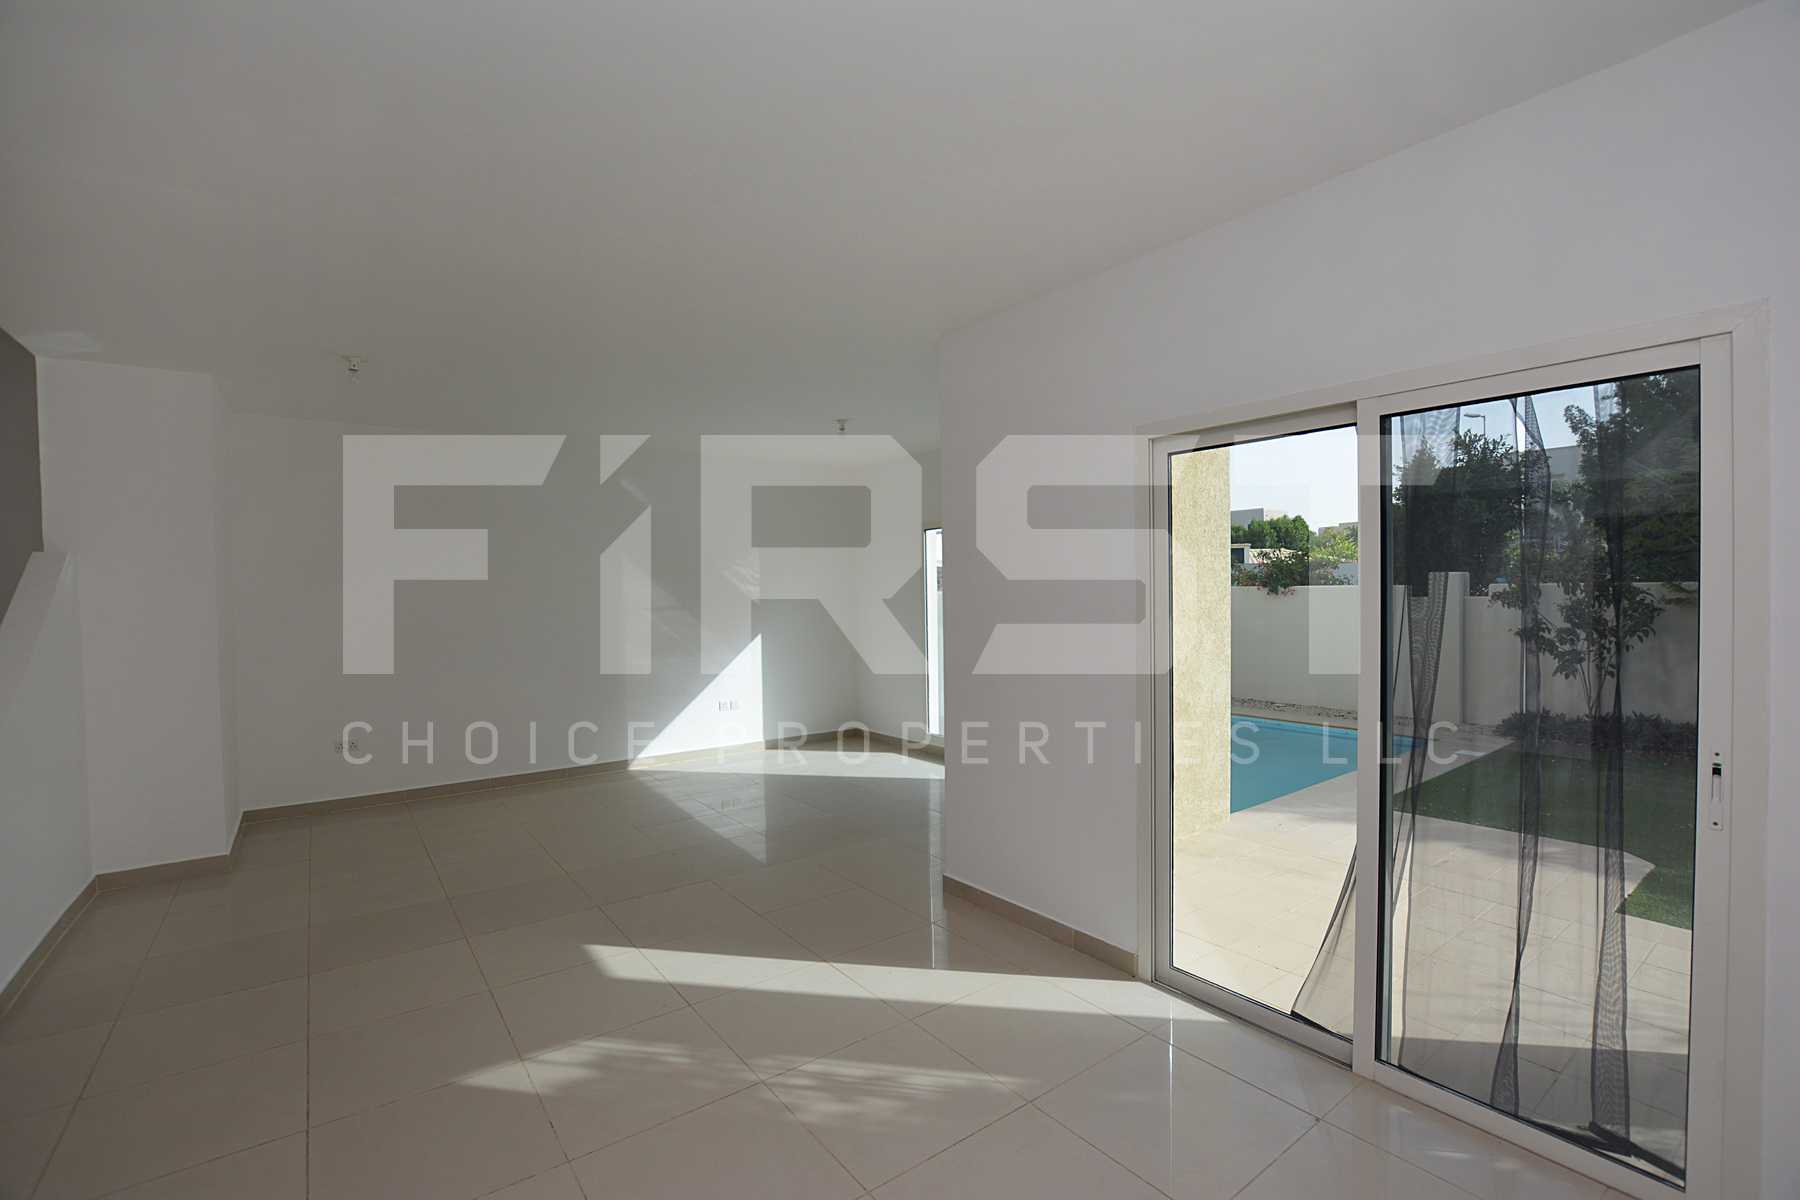 Internal Photo of 5 Bedroom Villa in Al Reef Villas 348.3 sq.m 3749 sq.ft (121).jpg